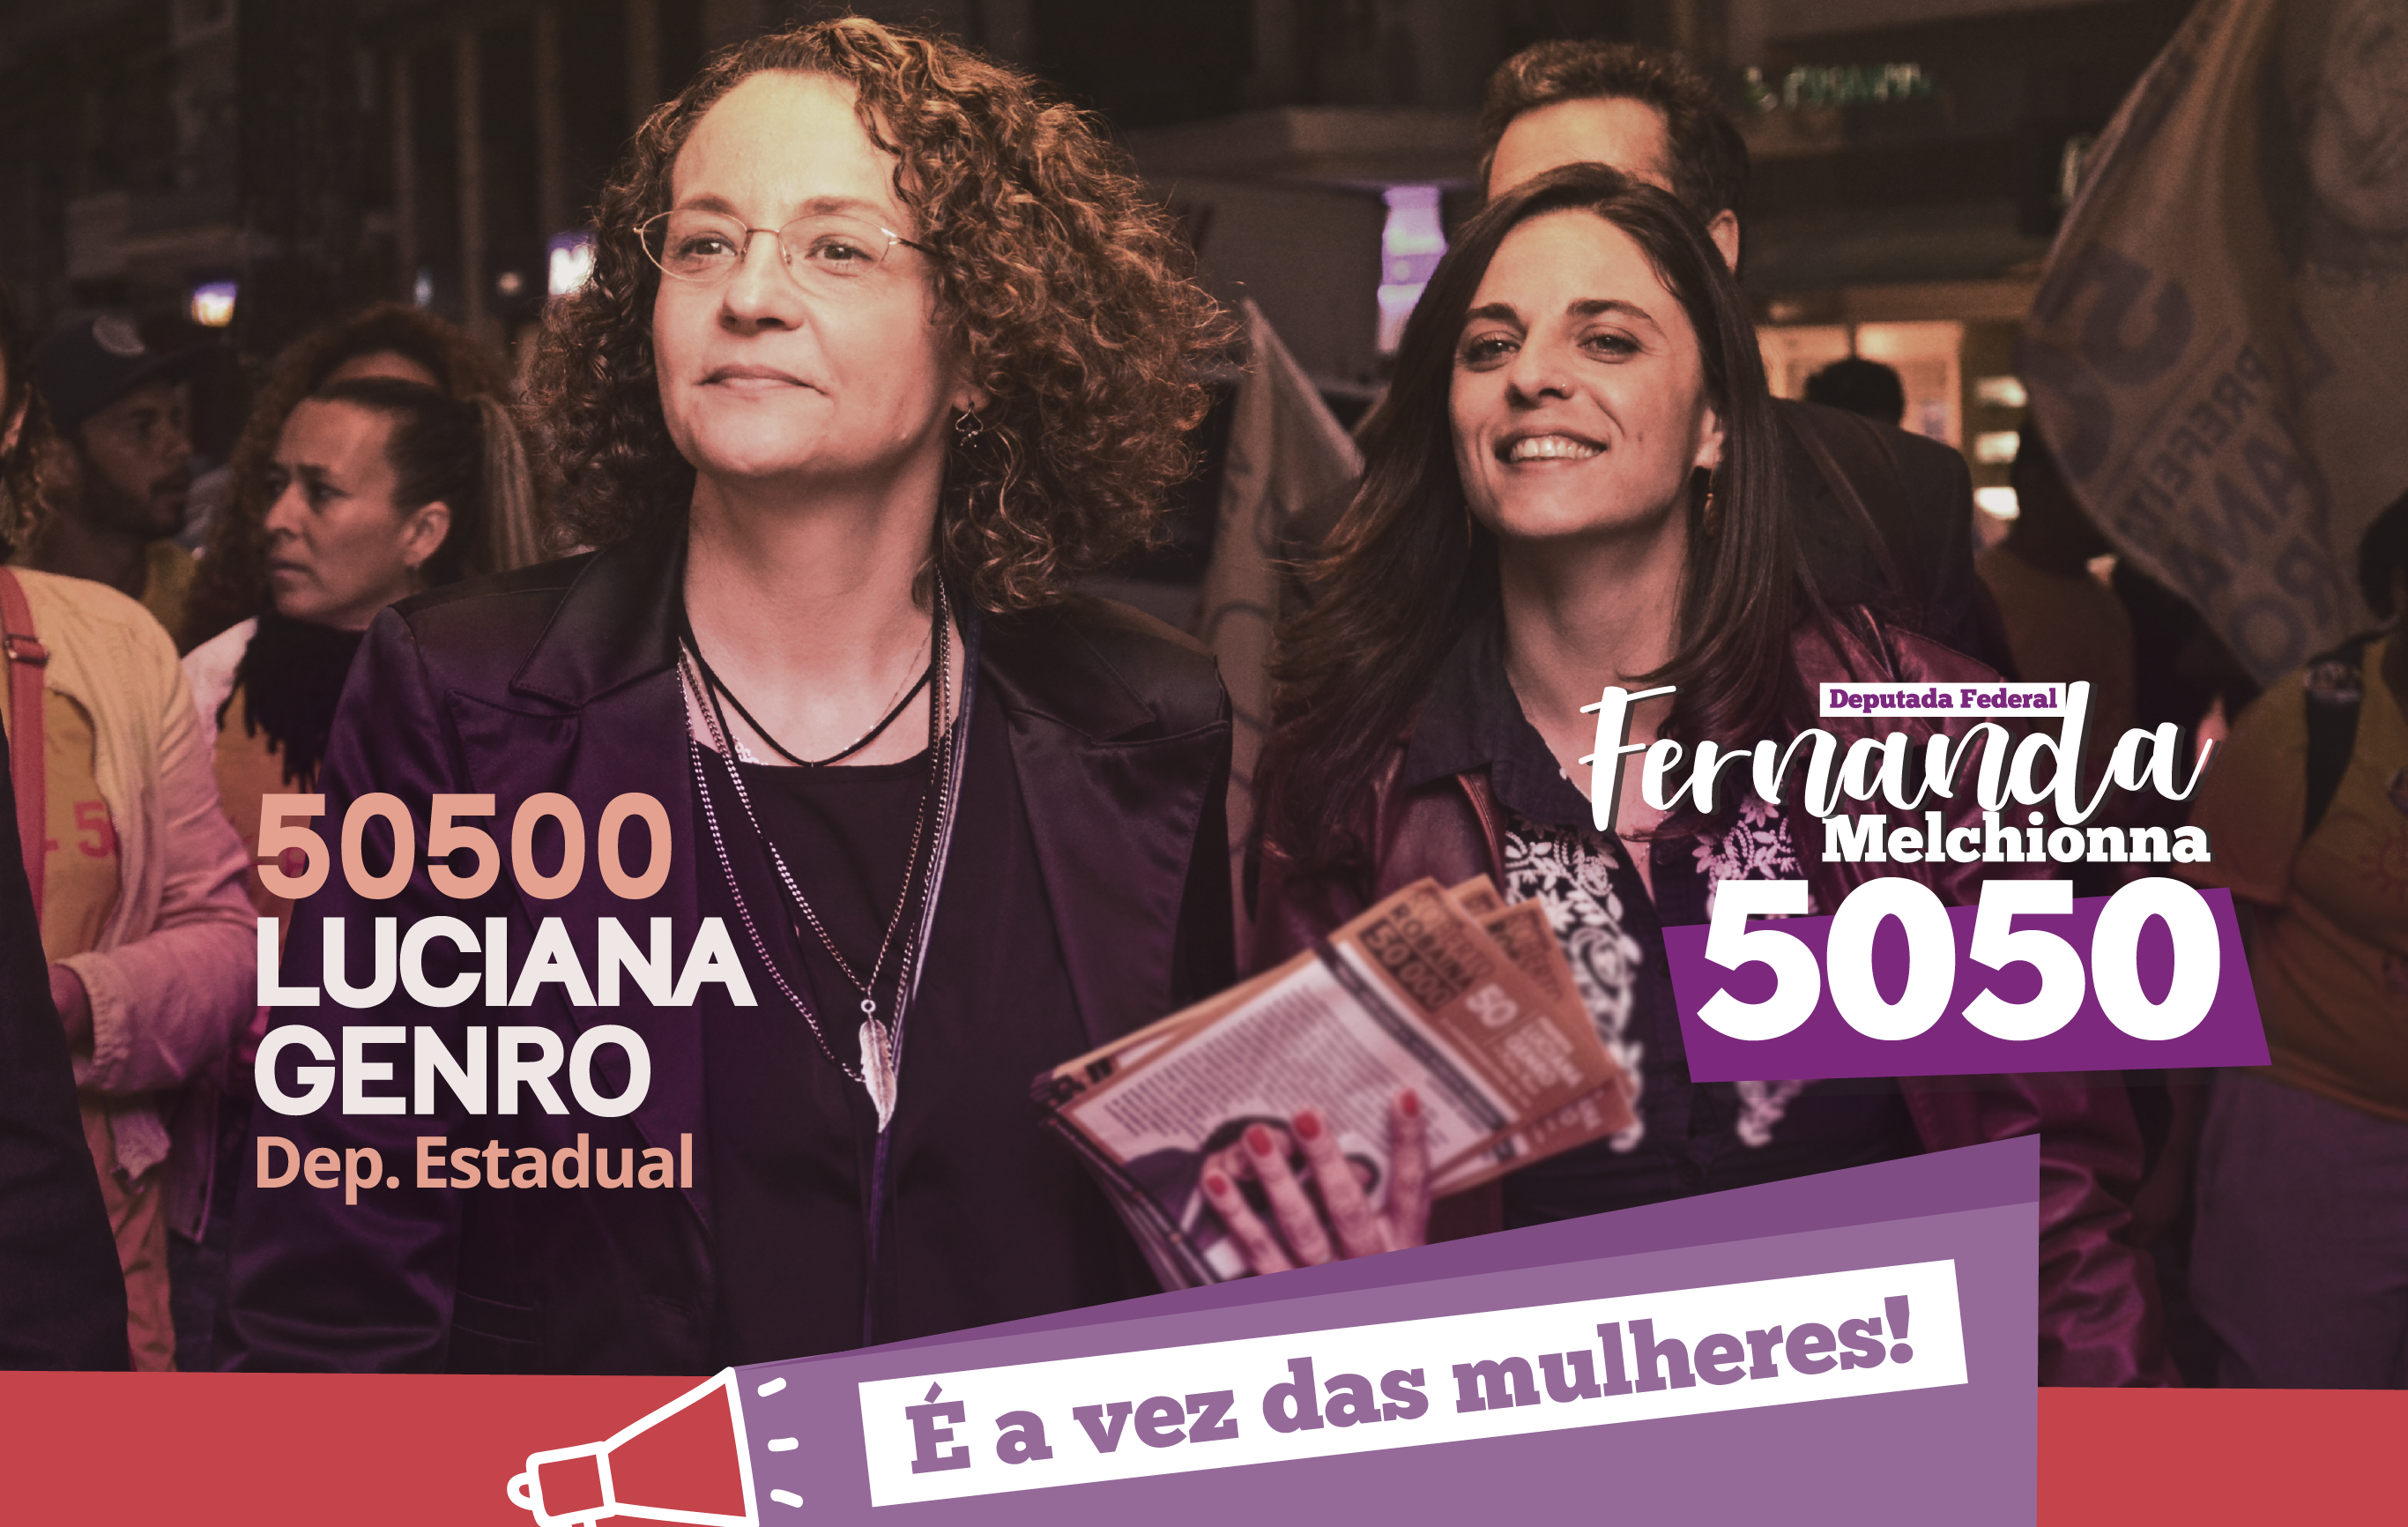 Fernanda e Luciana: é a vez das mulheres!